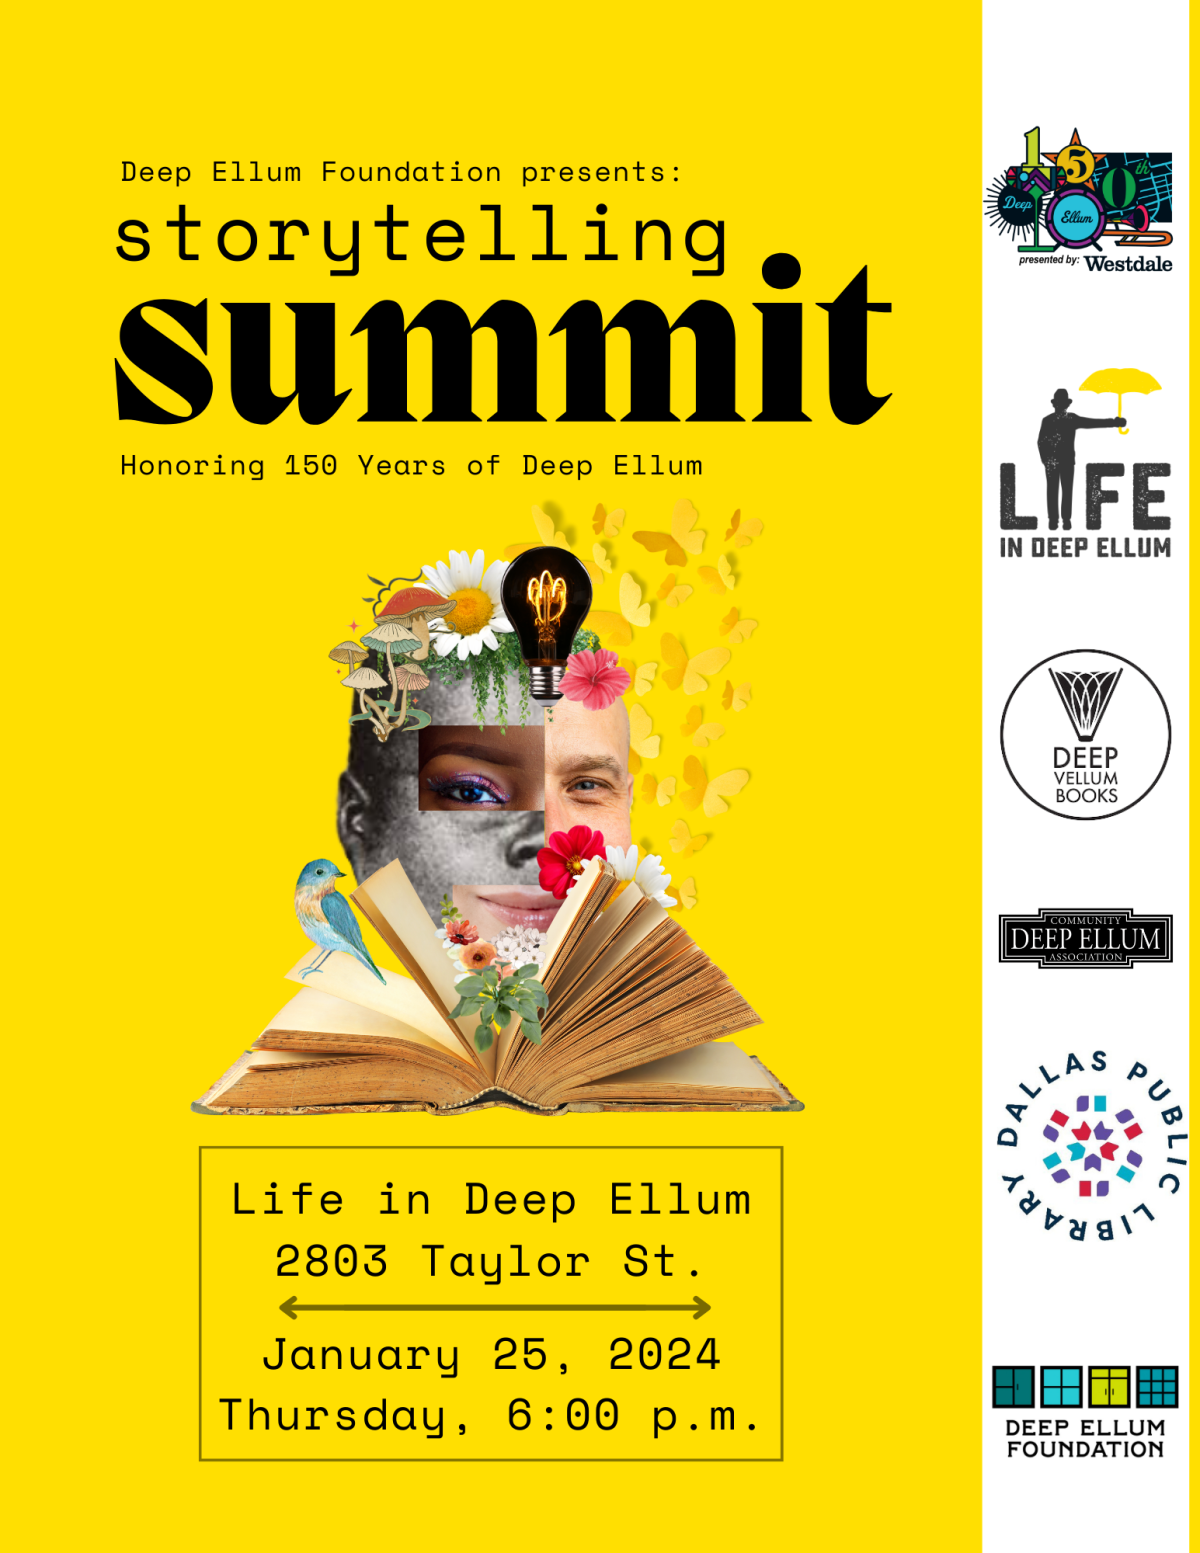 Storytelling Summit: Honoring 150 Years of Deep Ellum